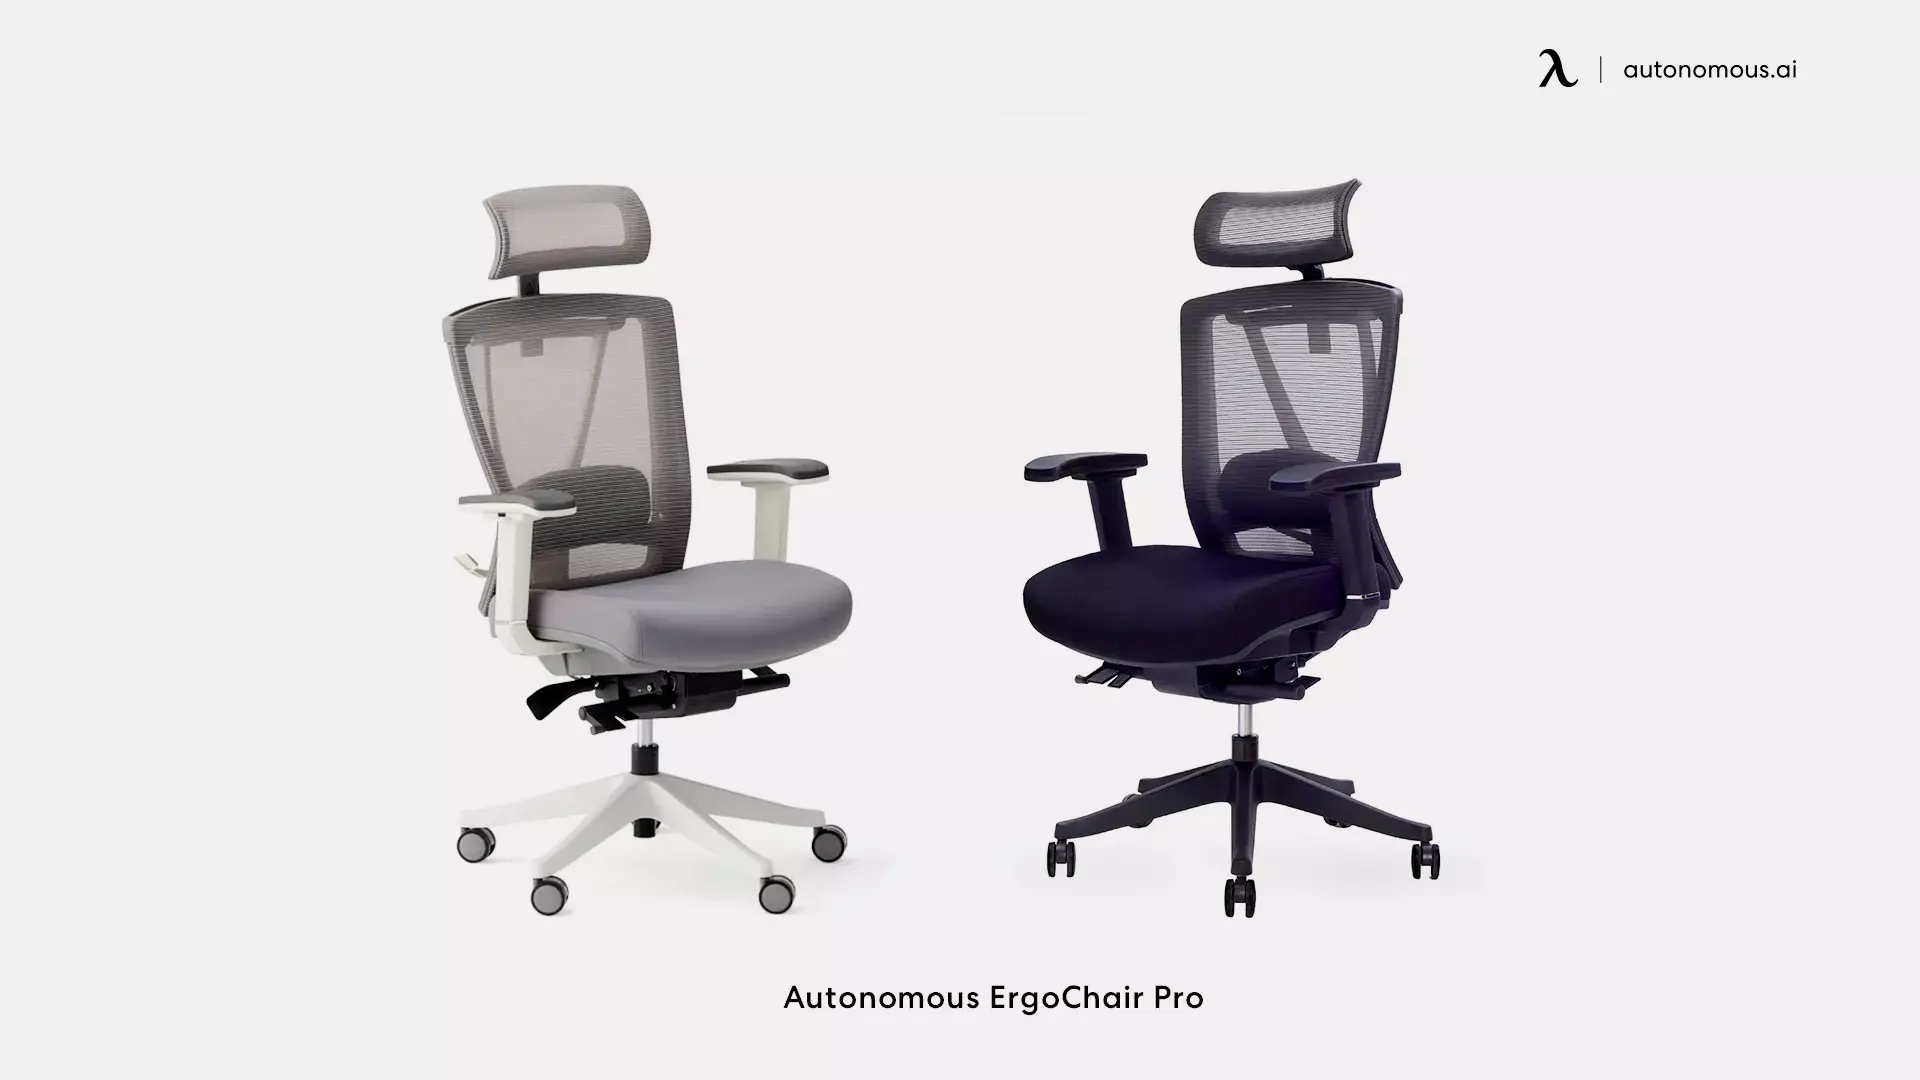 ErgoChair Pro by Autonomous comfortable office chair